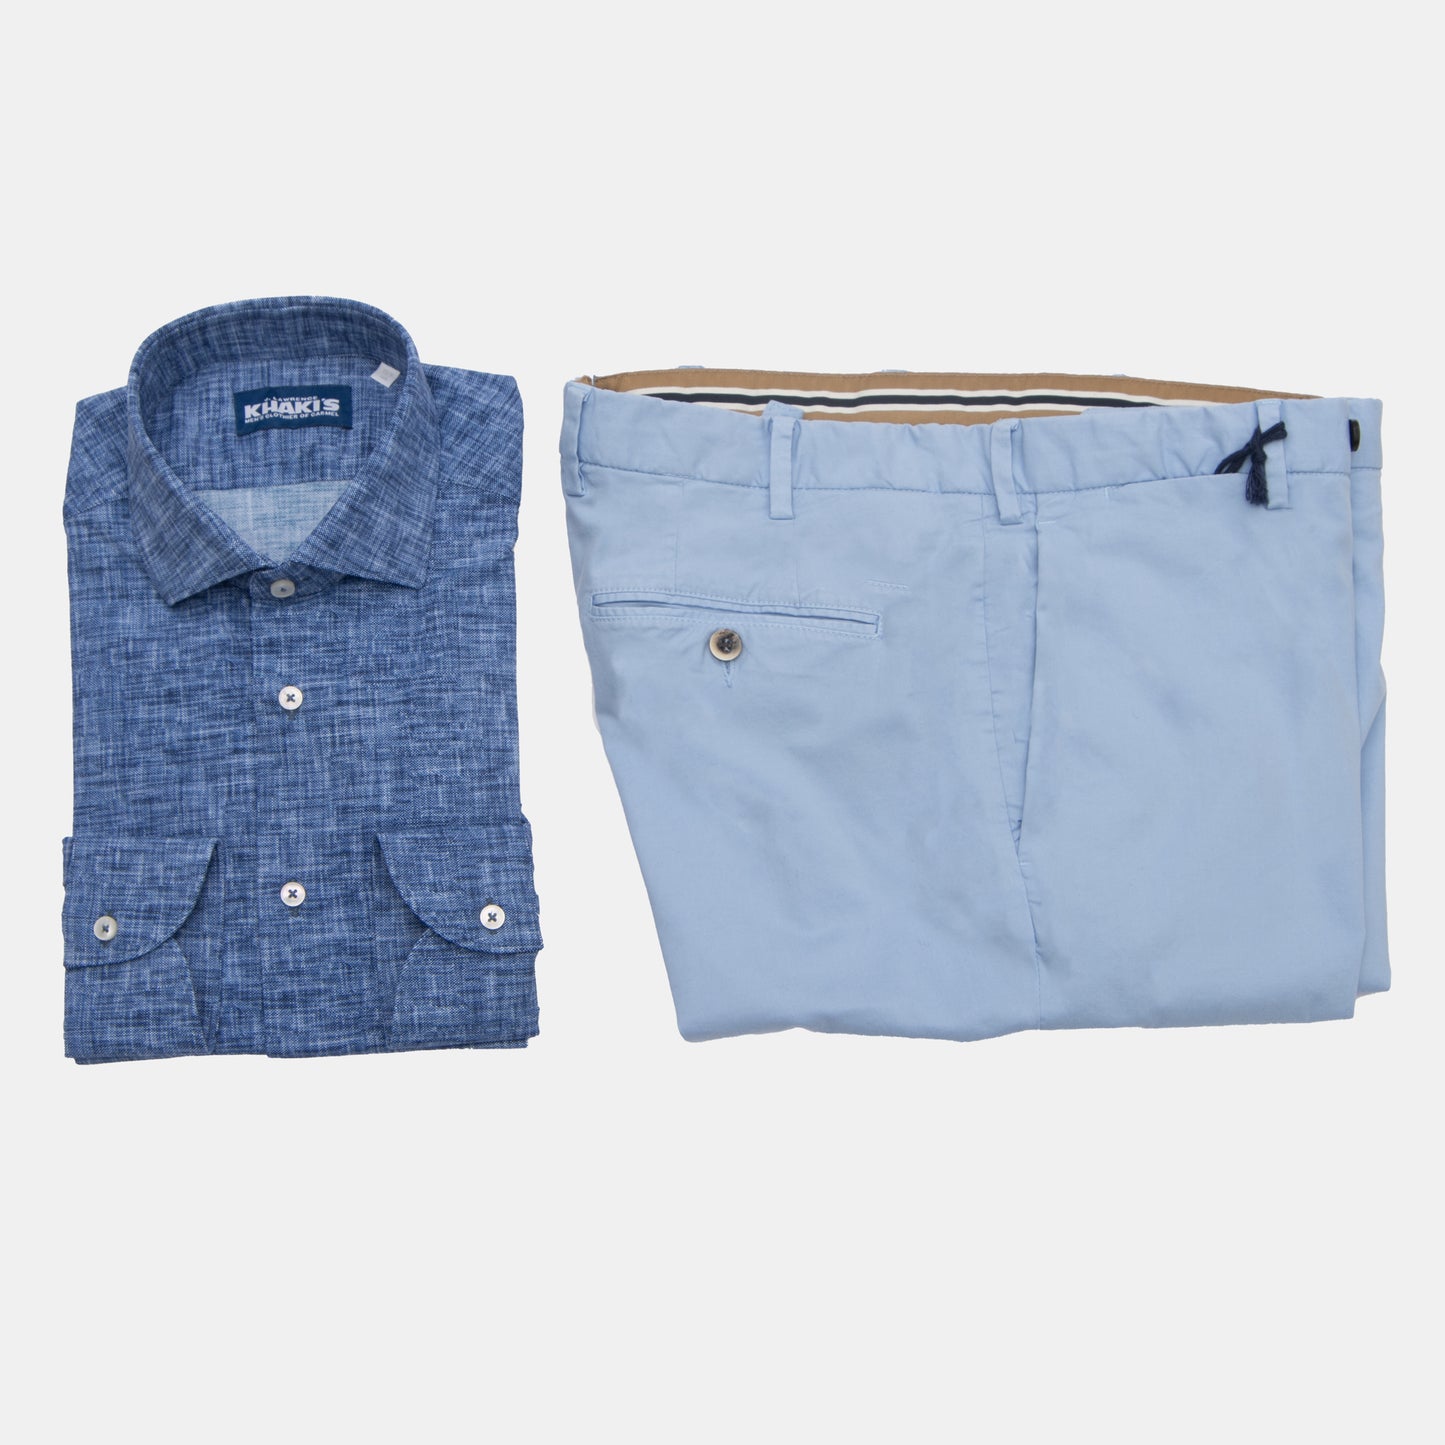 Khaki’s of Carmel - Navy Shirt